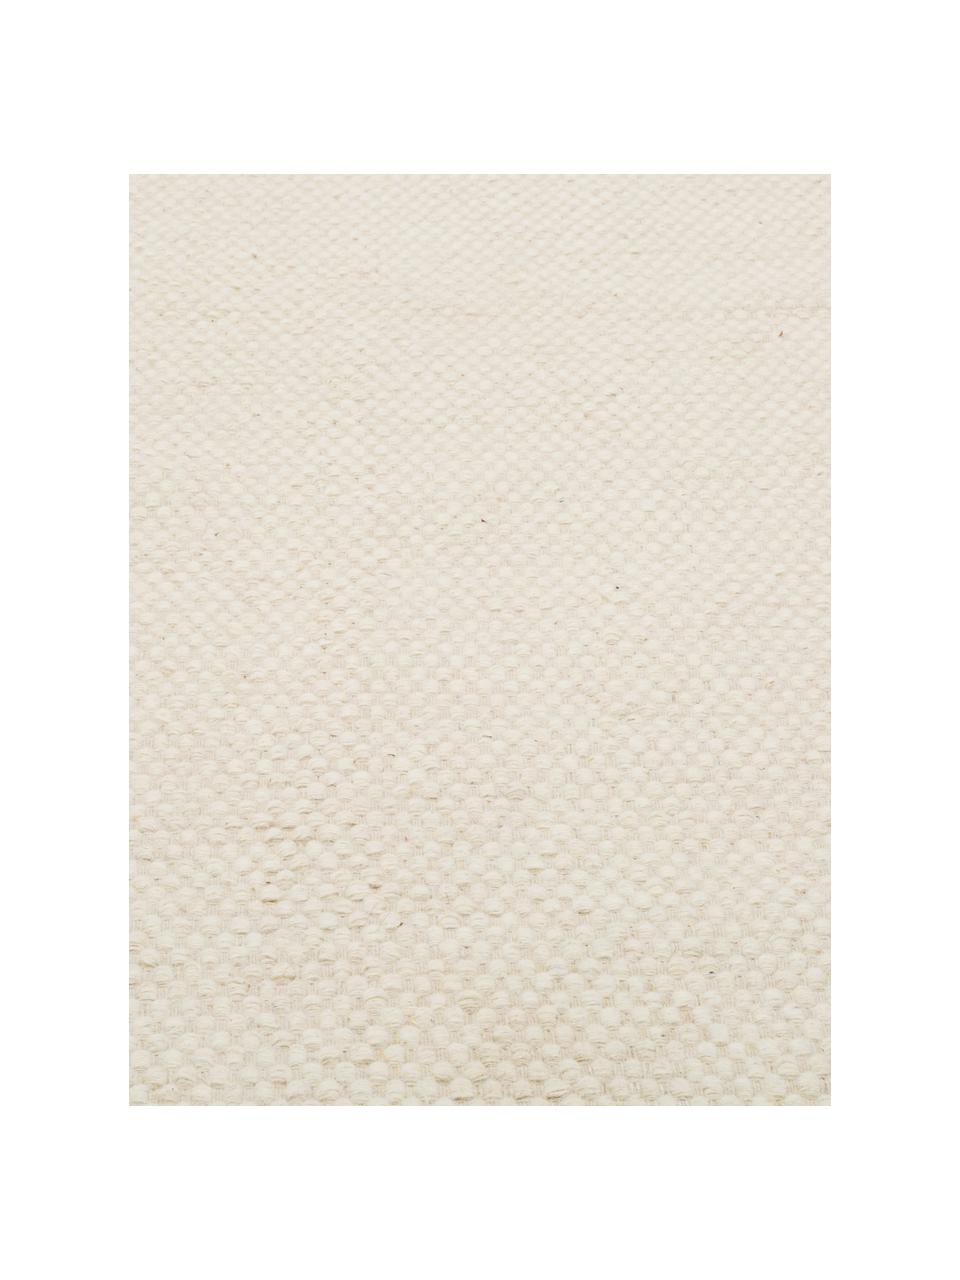 Handgewebter Kelimteppich Delight aus Wolle in Cremeweiss, Vorderseite: 90% Wolle, 10% Baumwolle, Rückseite: Baumwolle, Wollweiss, B 250 x L 350 cm (Grösse XL)